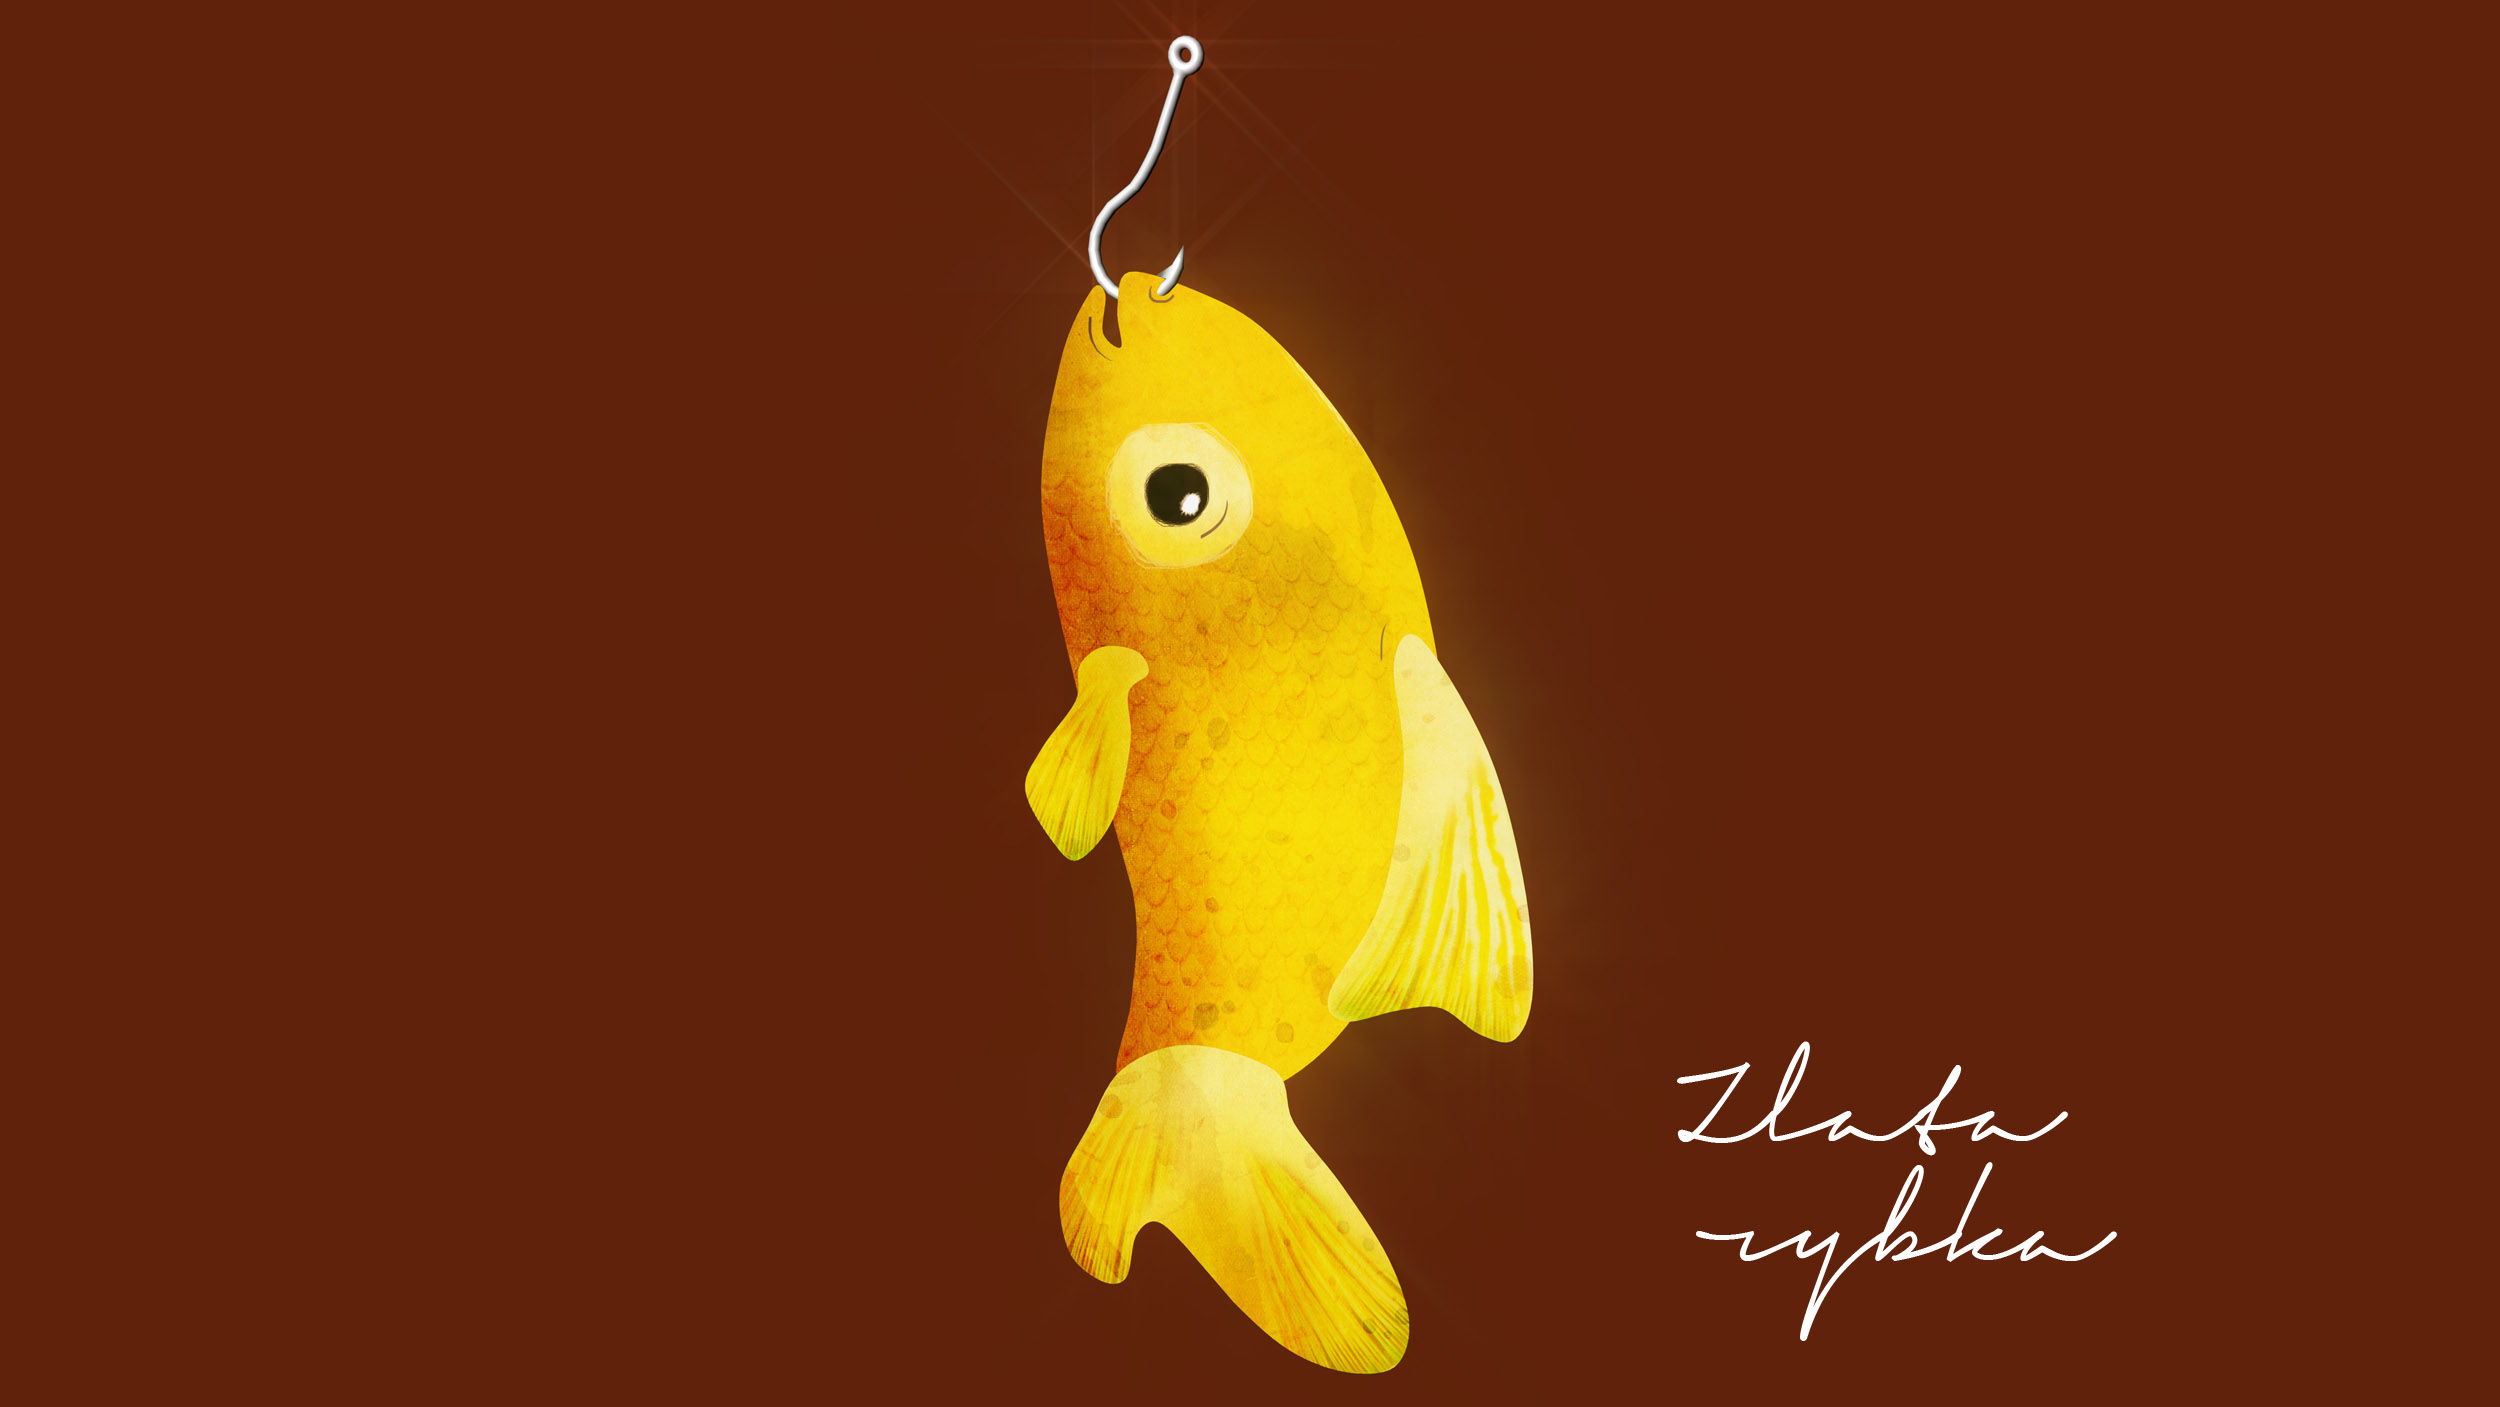 03_zlata rybka